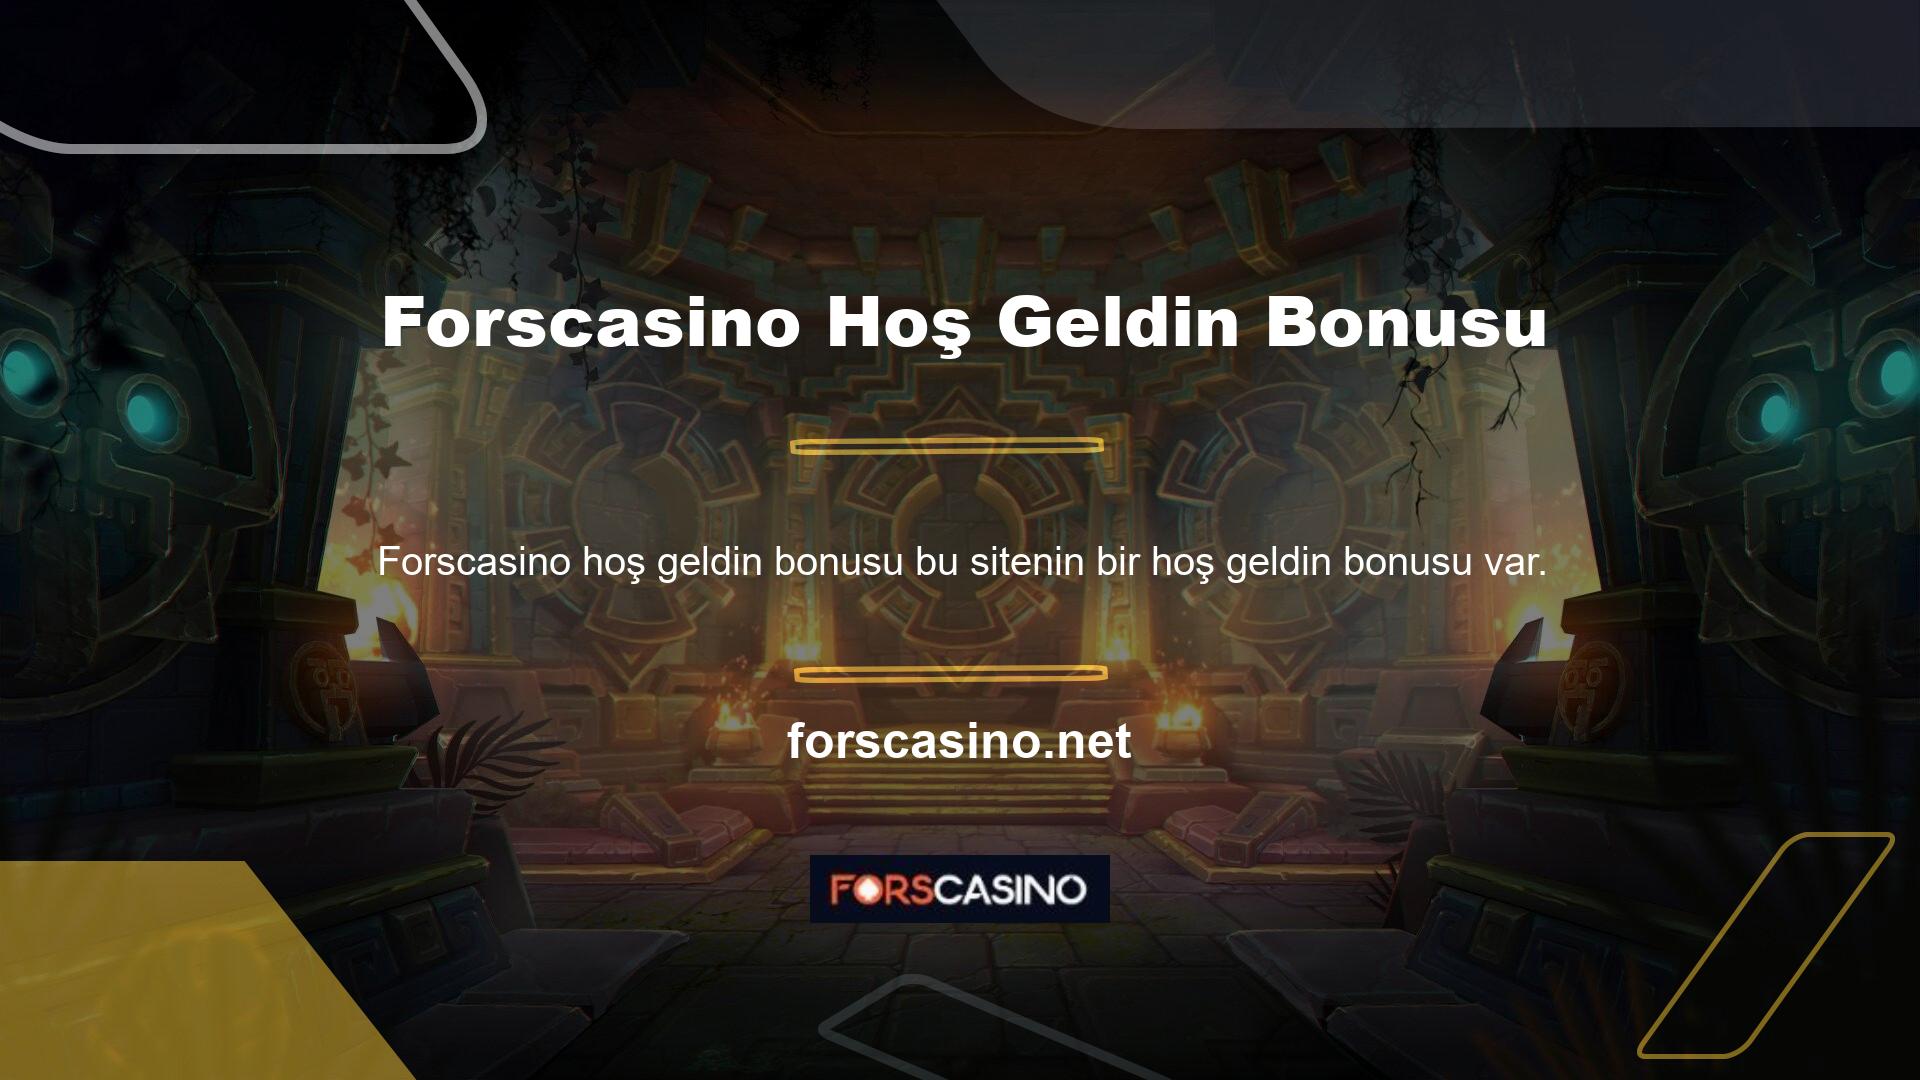 Casinoda hoş geldin bonusundan yararlanabilirsiniz